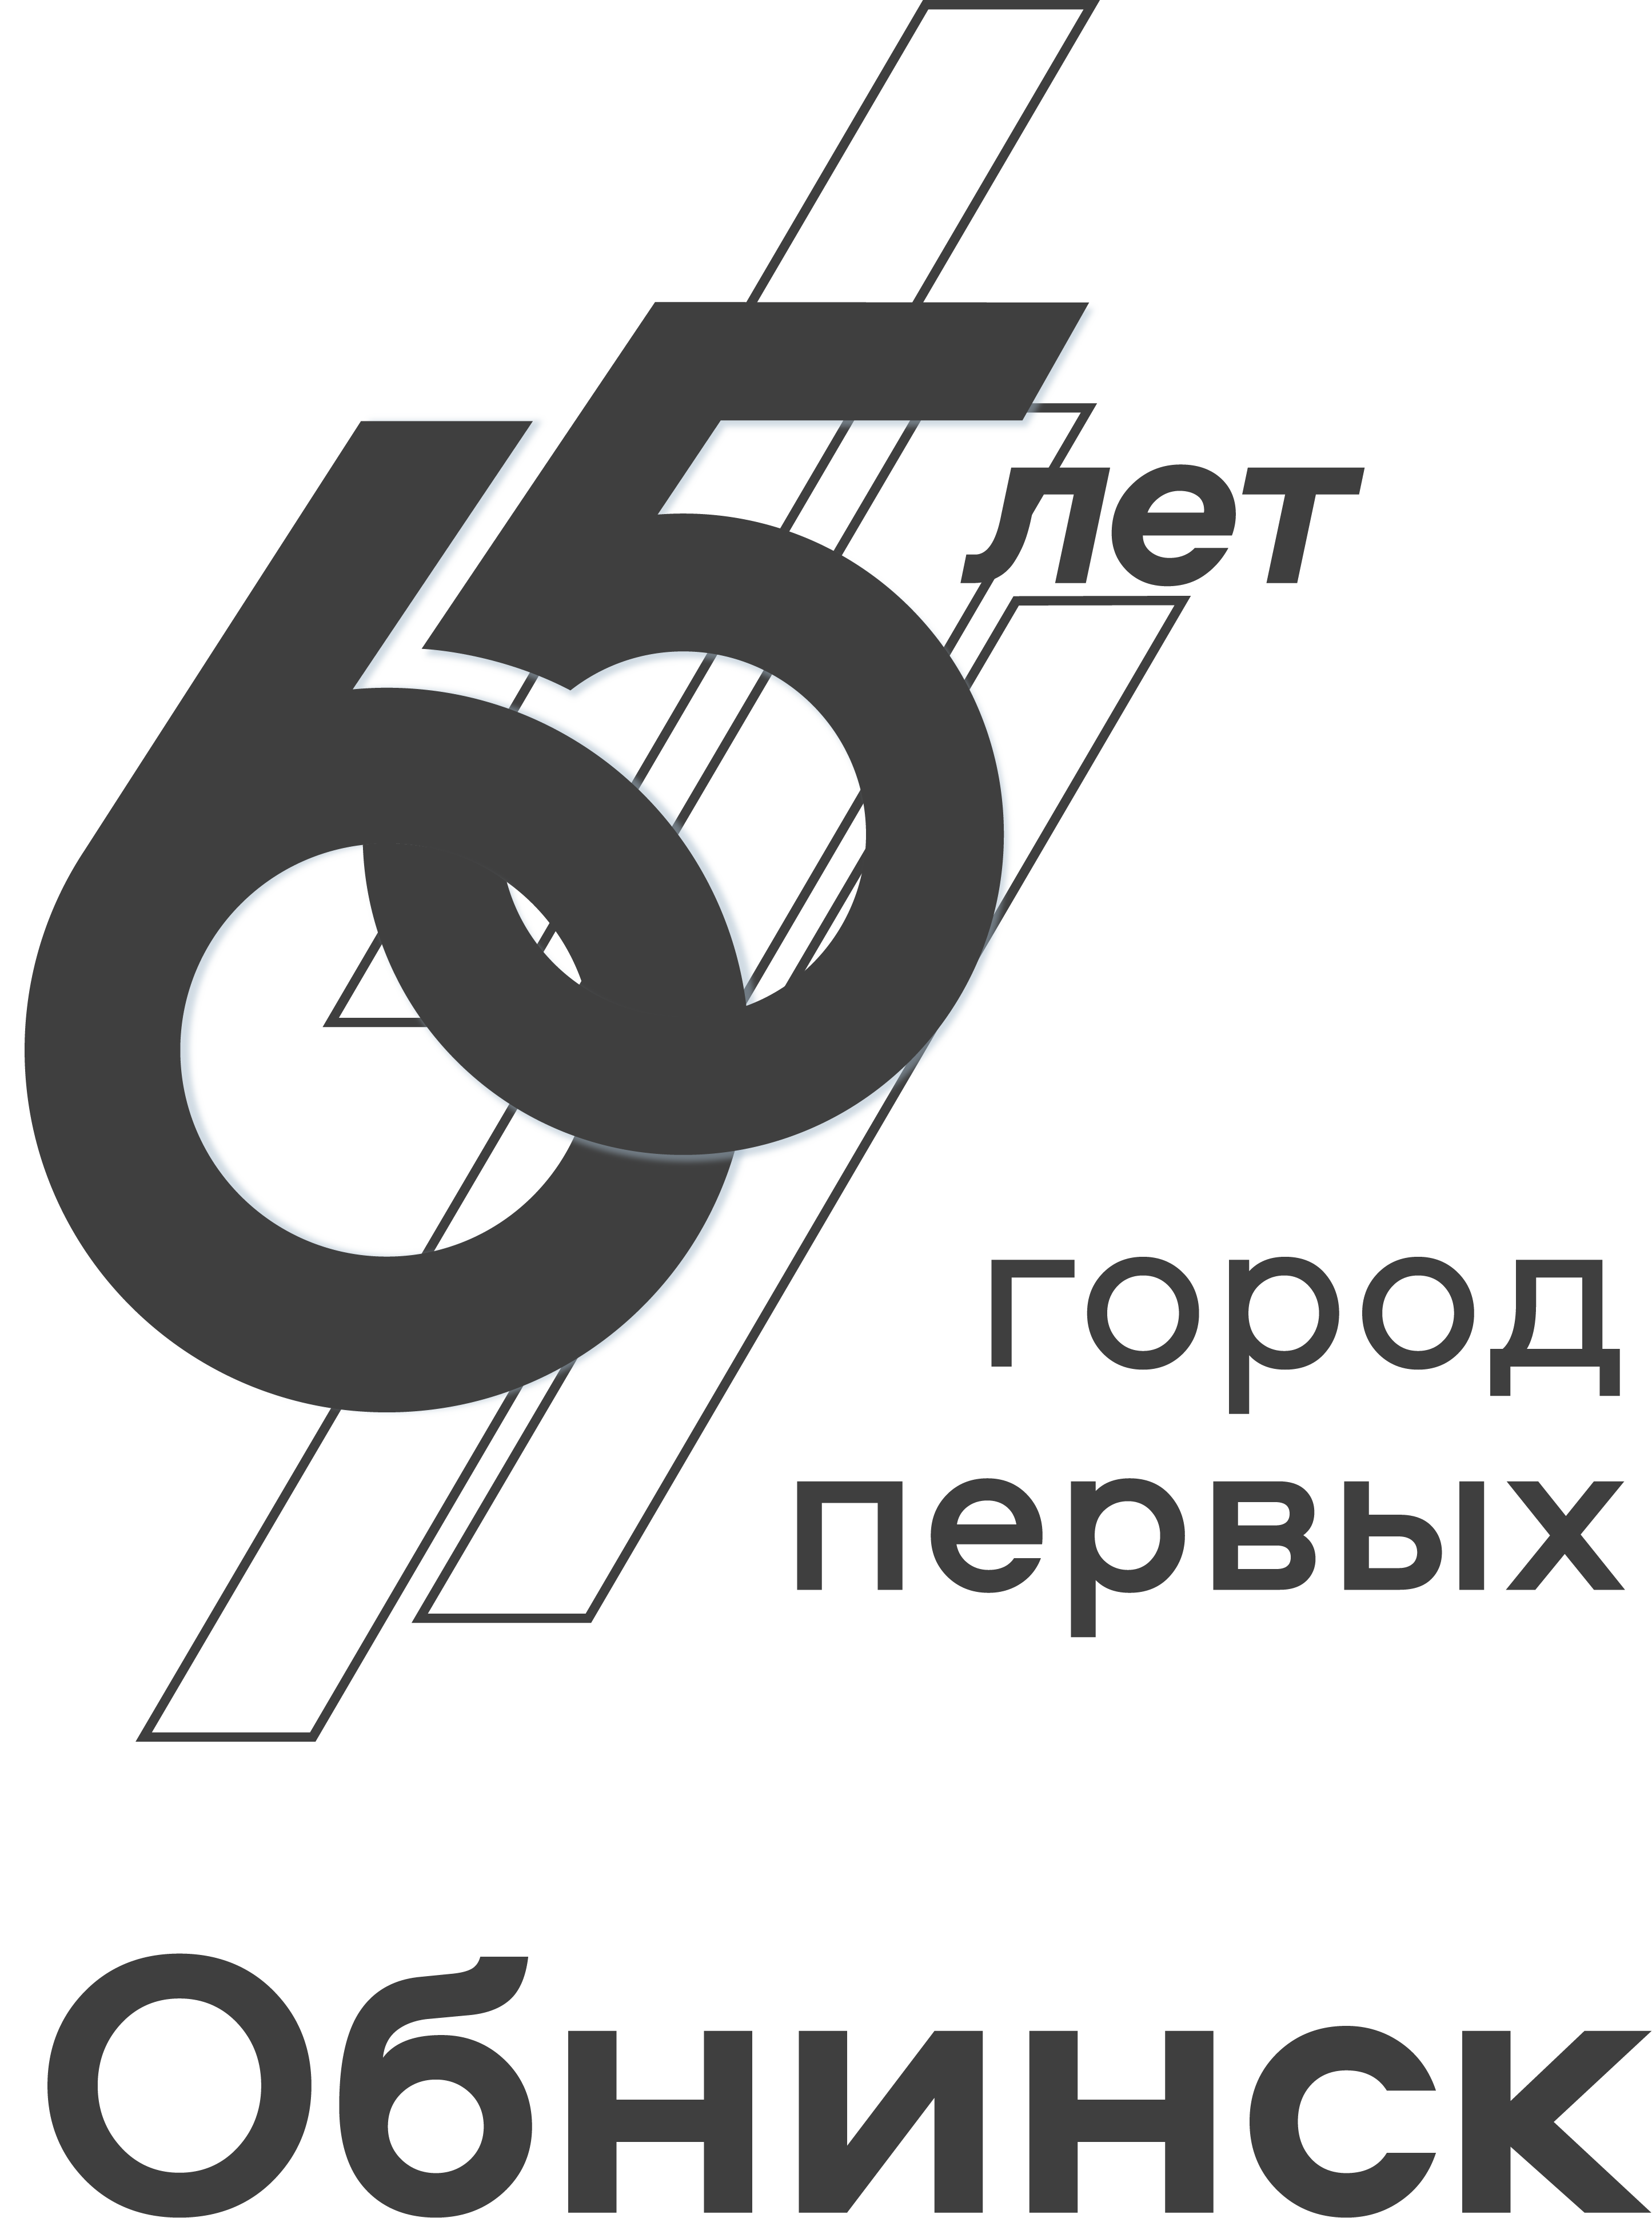 Черный логотип Обнинск город первых